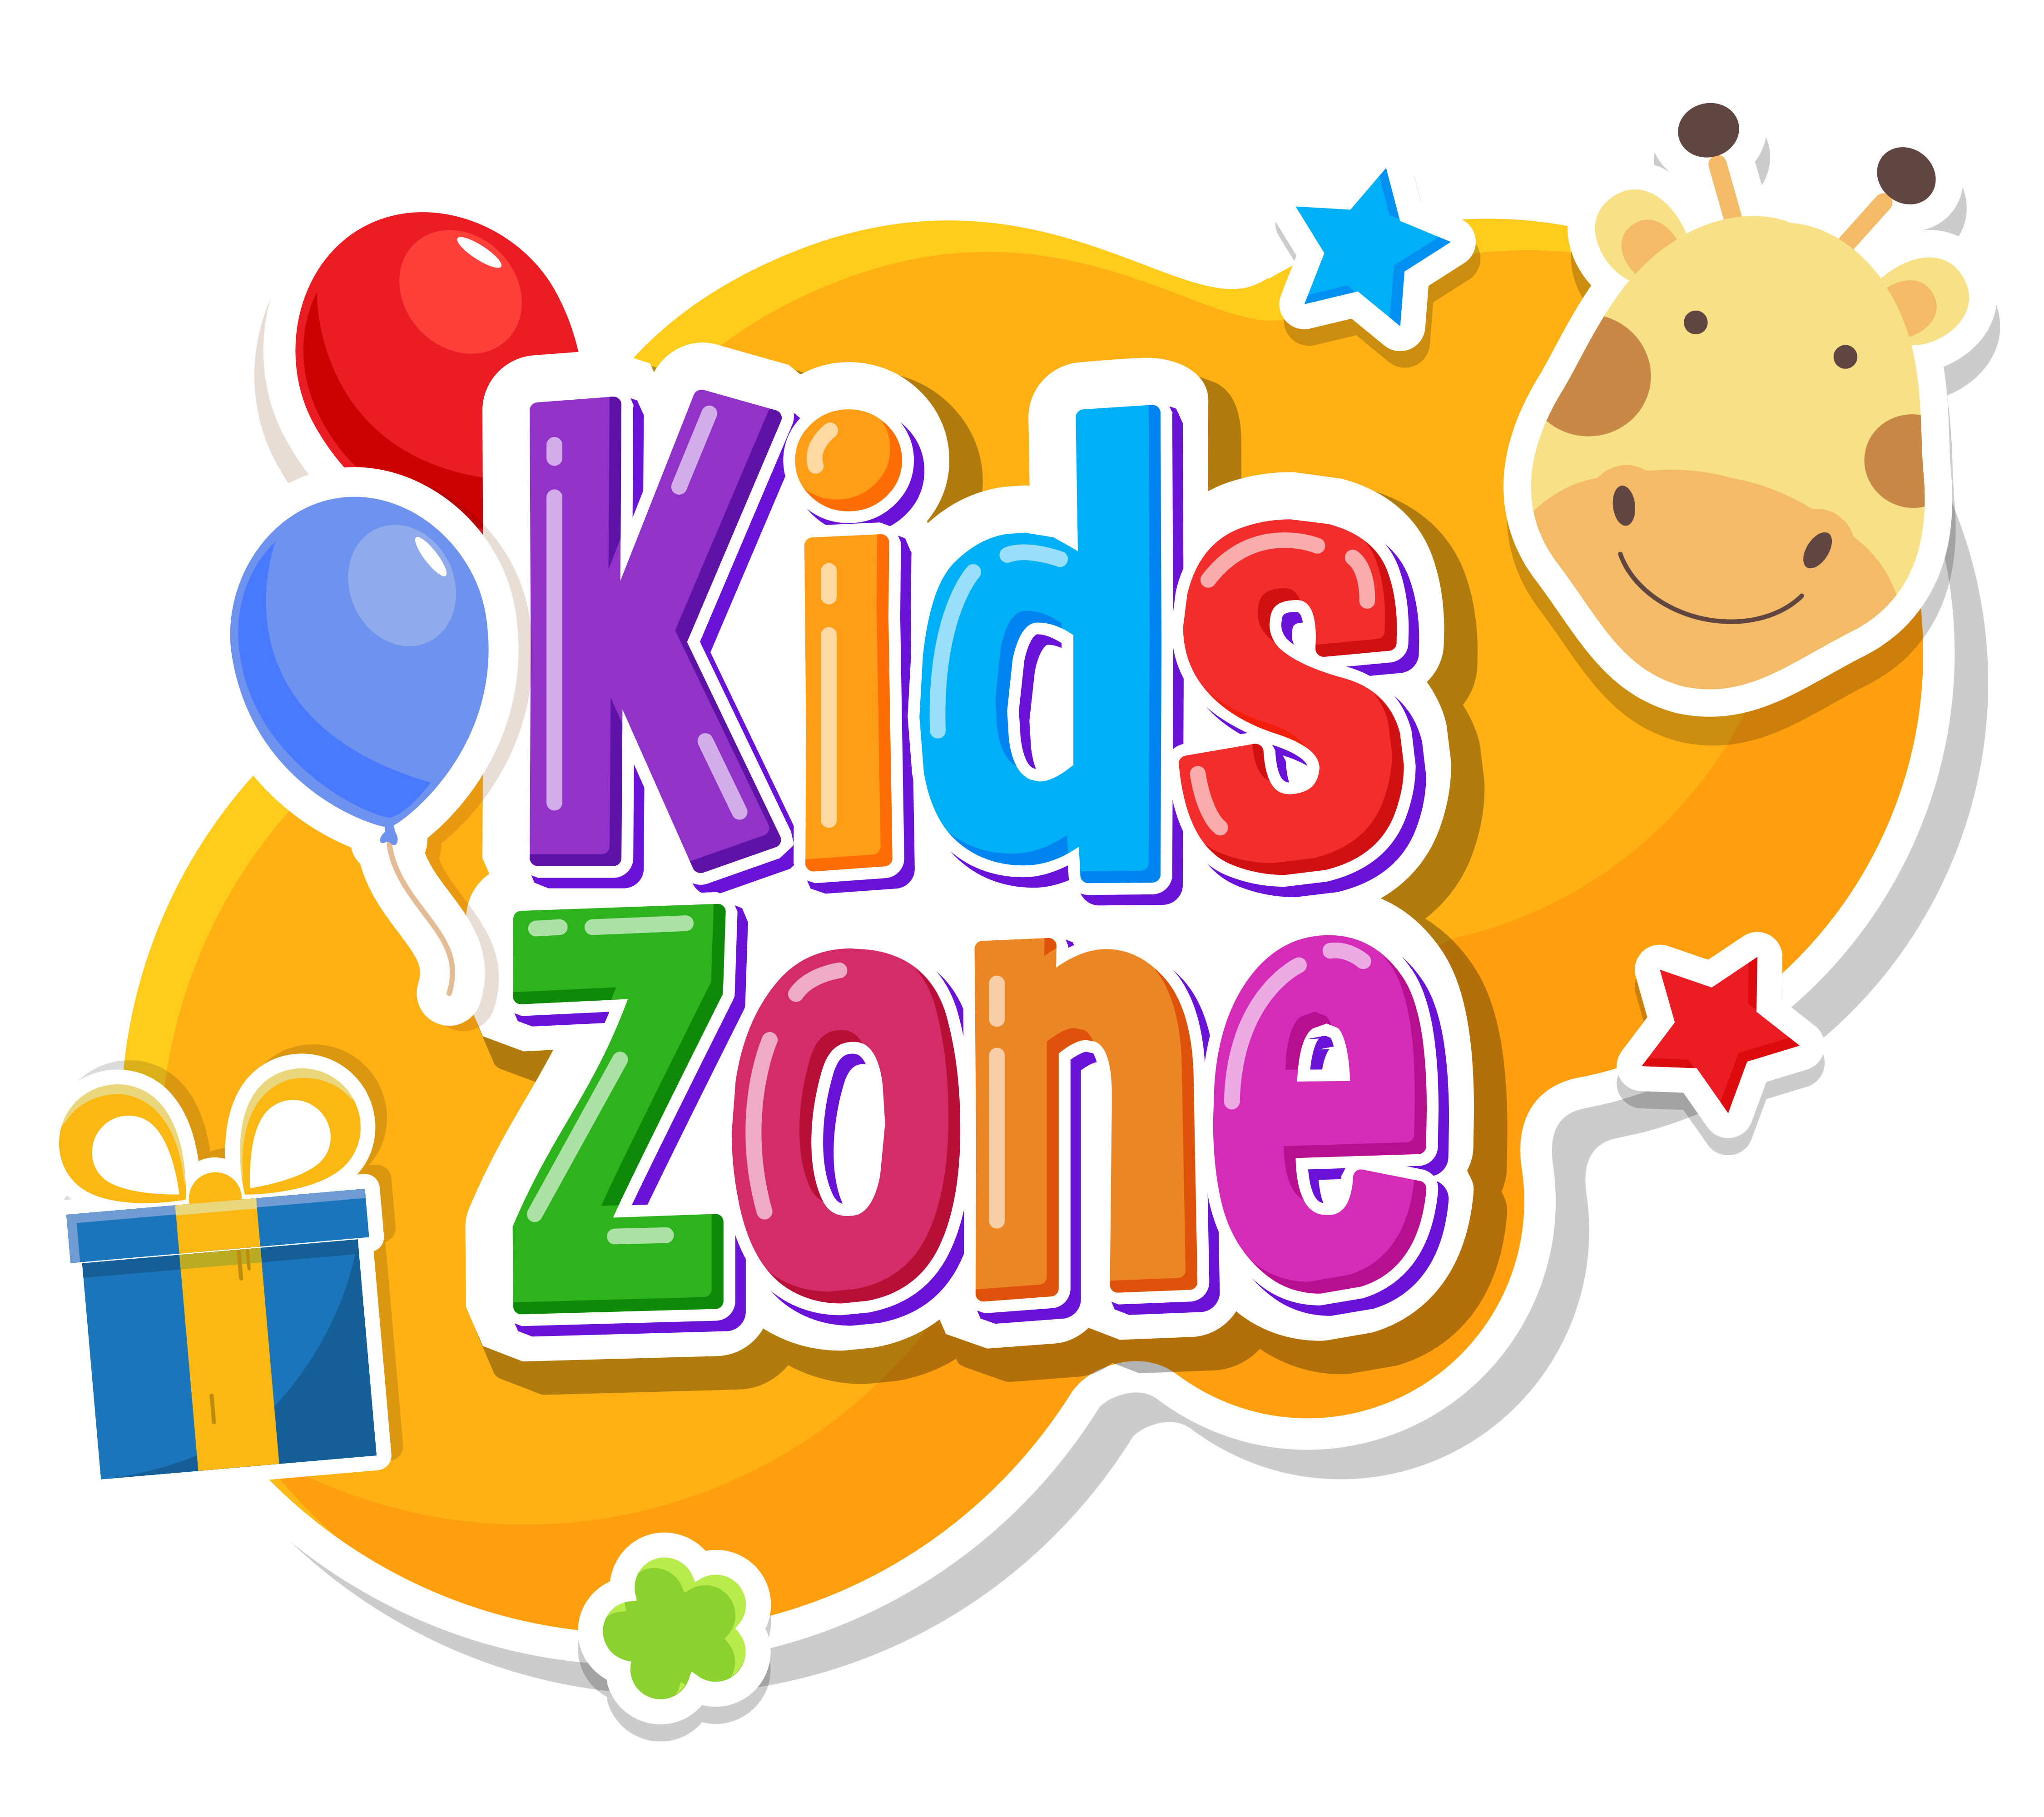 Kids-Zone